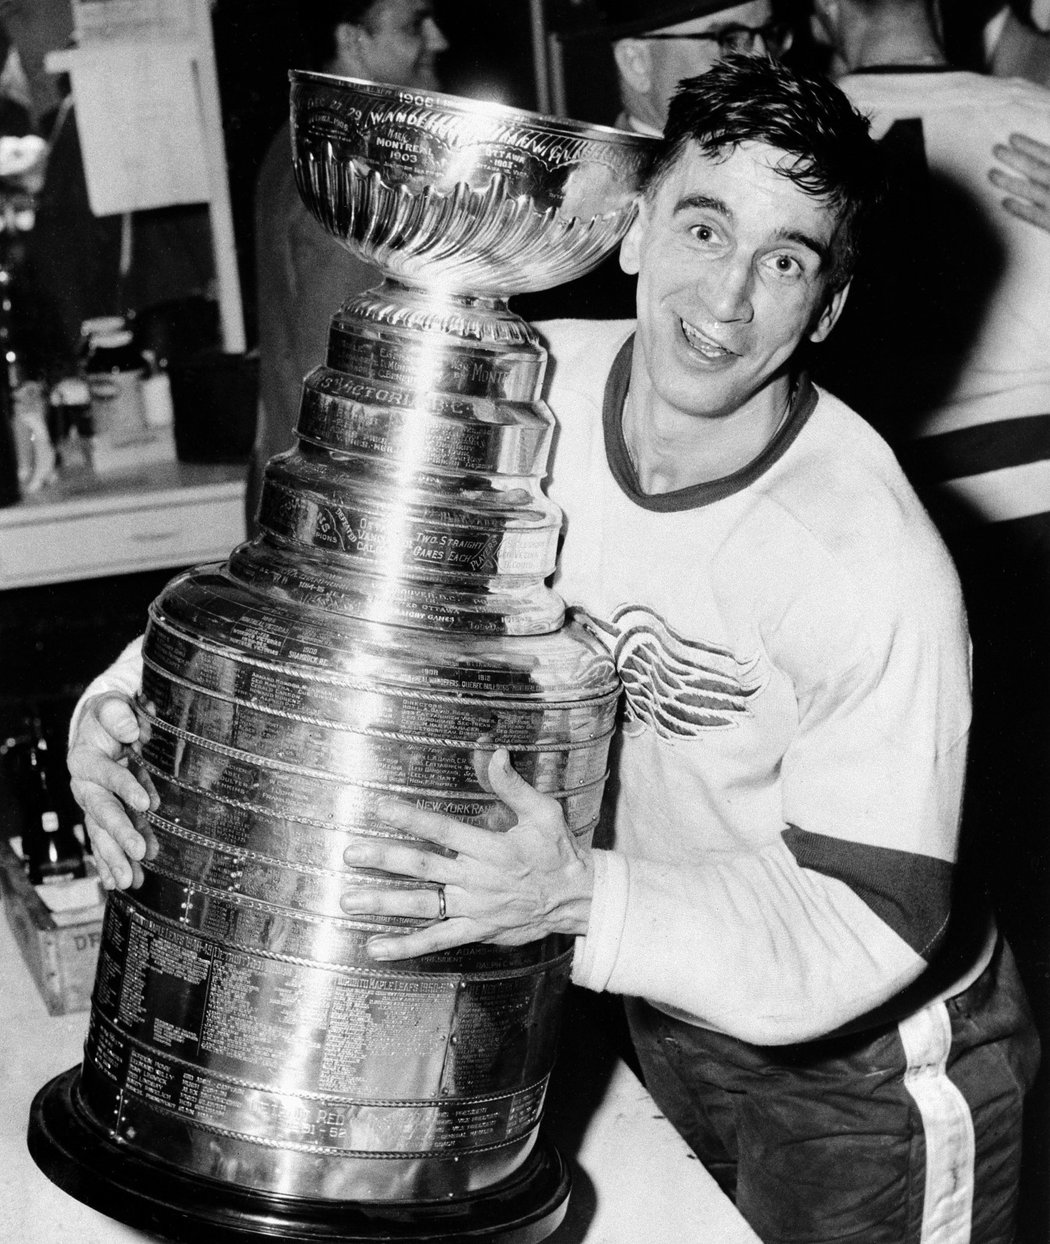 Ve věku 93 let zemřel legendární útočník Ted Lindsay, po němž je pojmenována trofej pro nejlepšího hokejistu NHL podle hlasování samotných hráčů